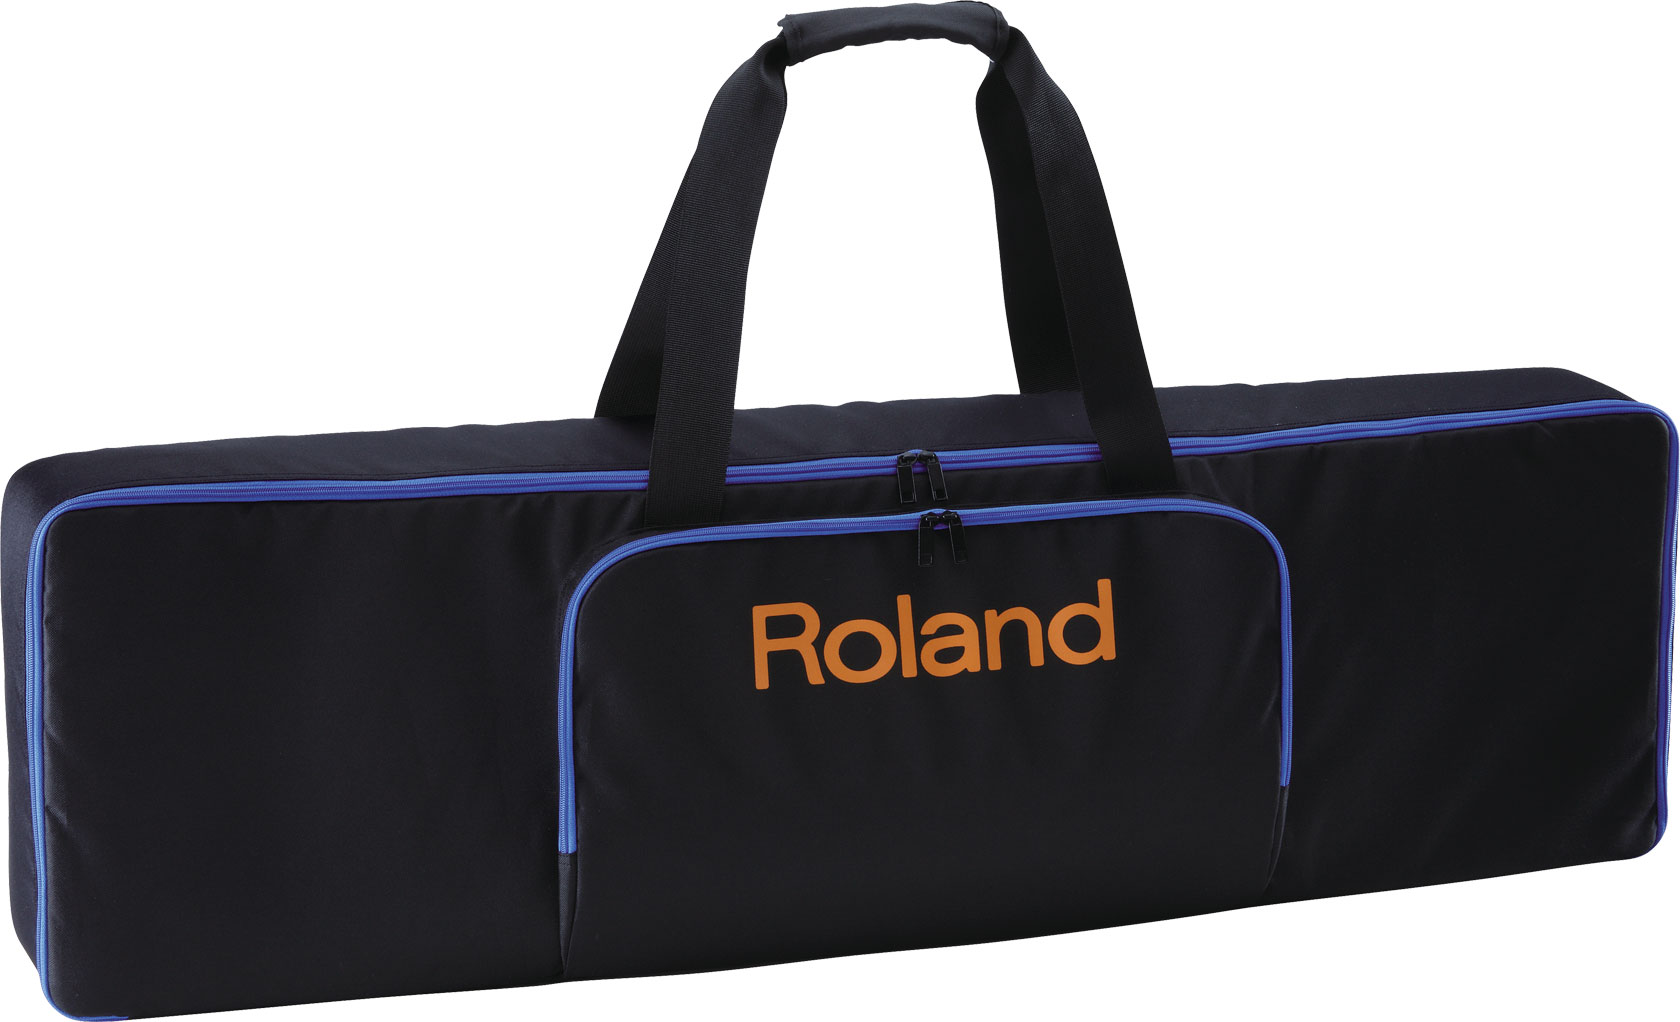 Roland CB-61W